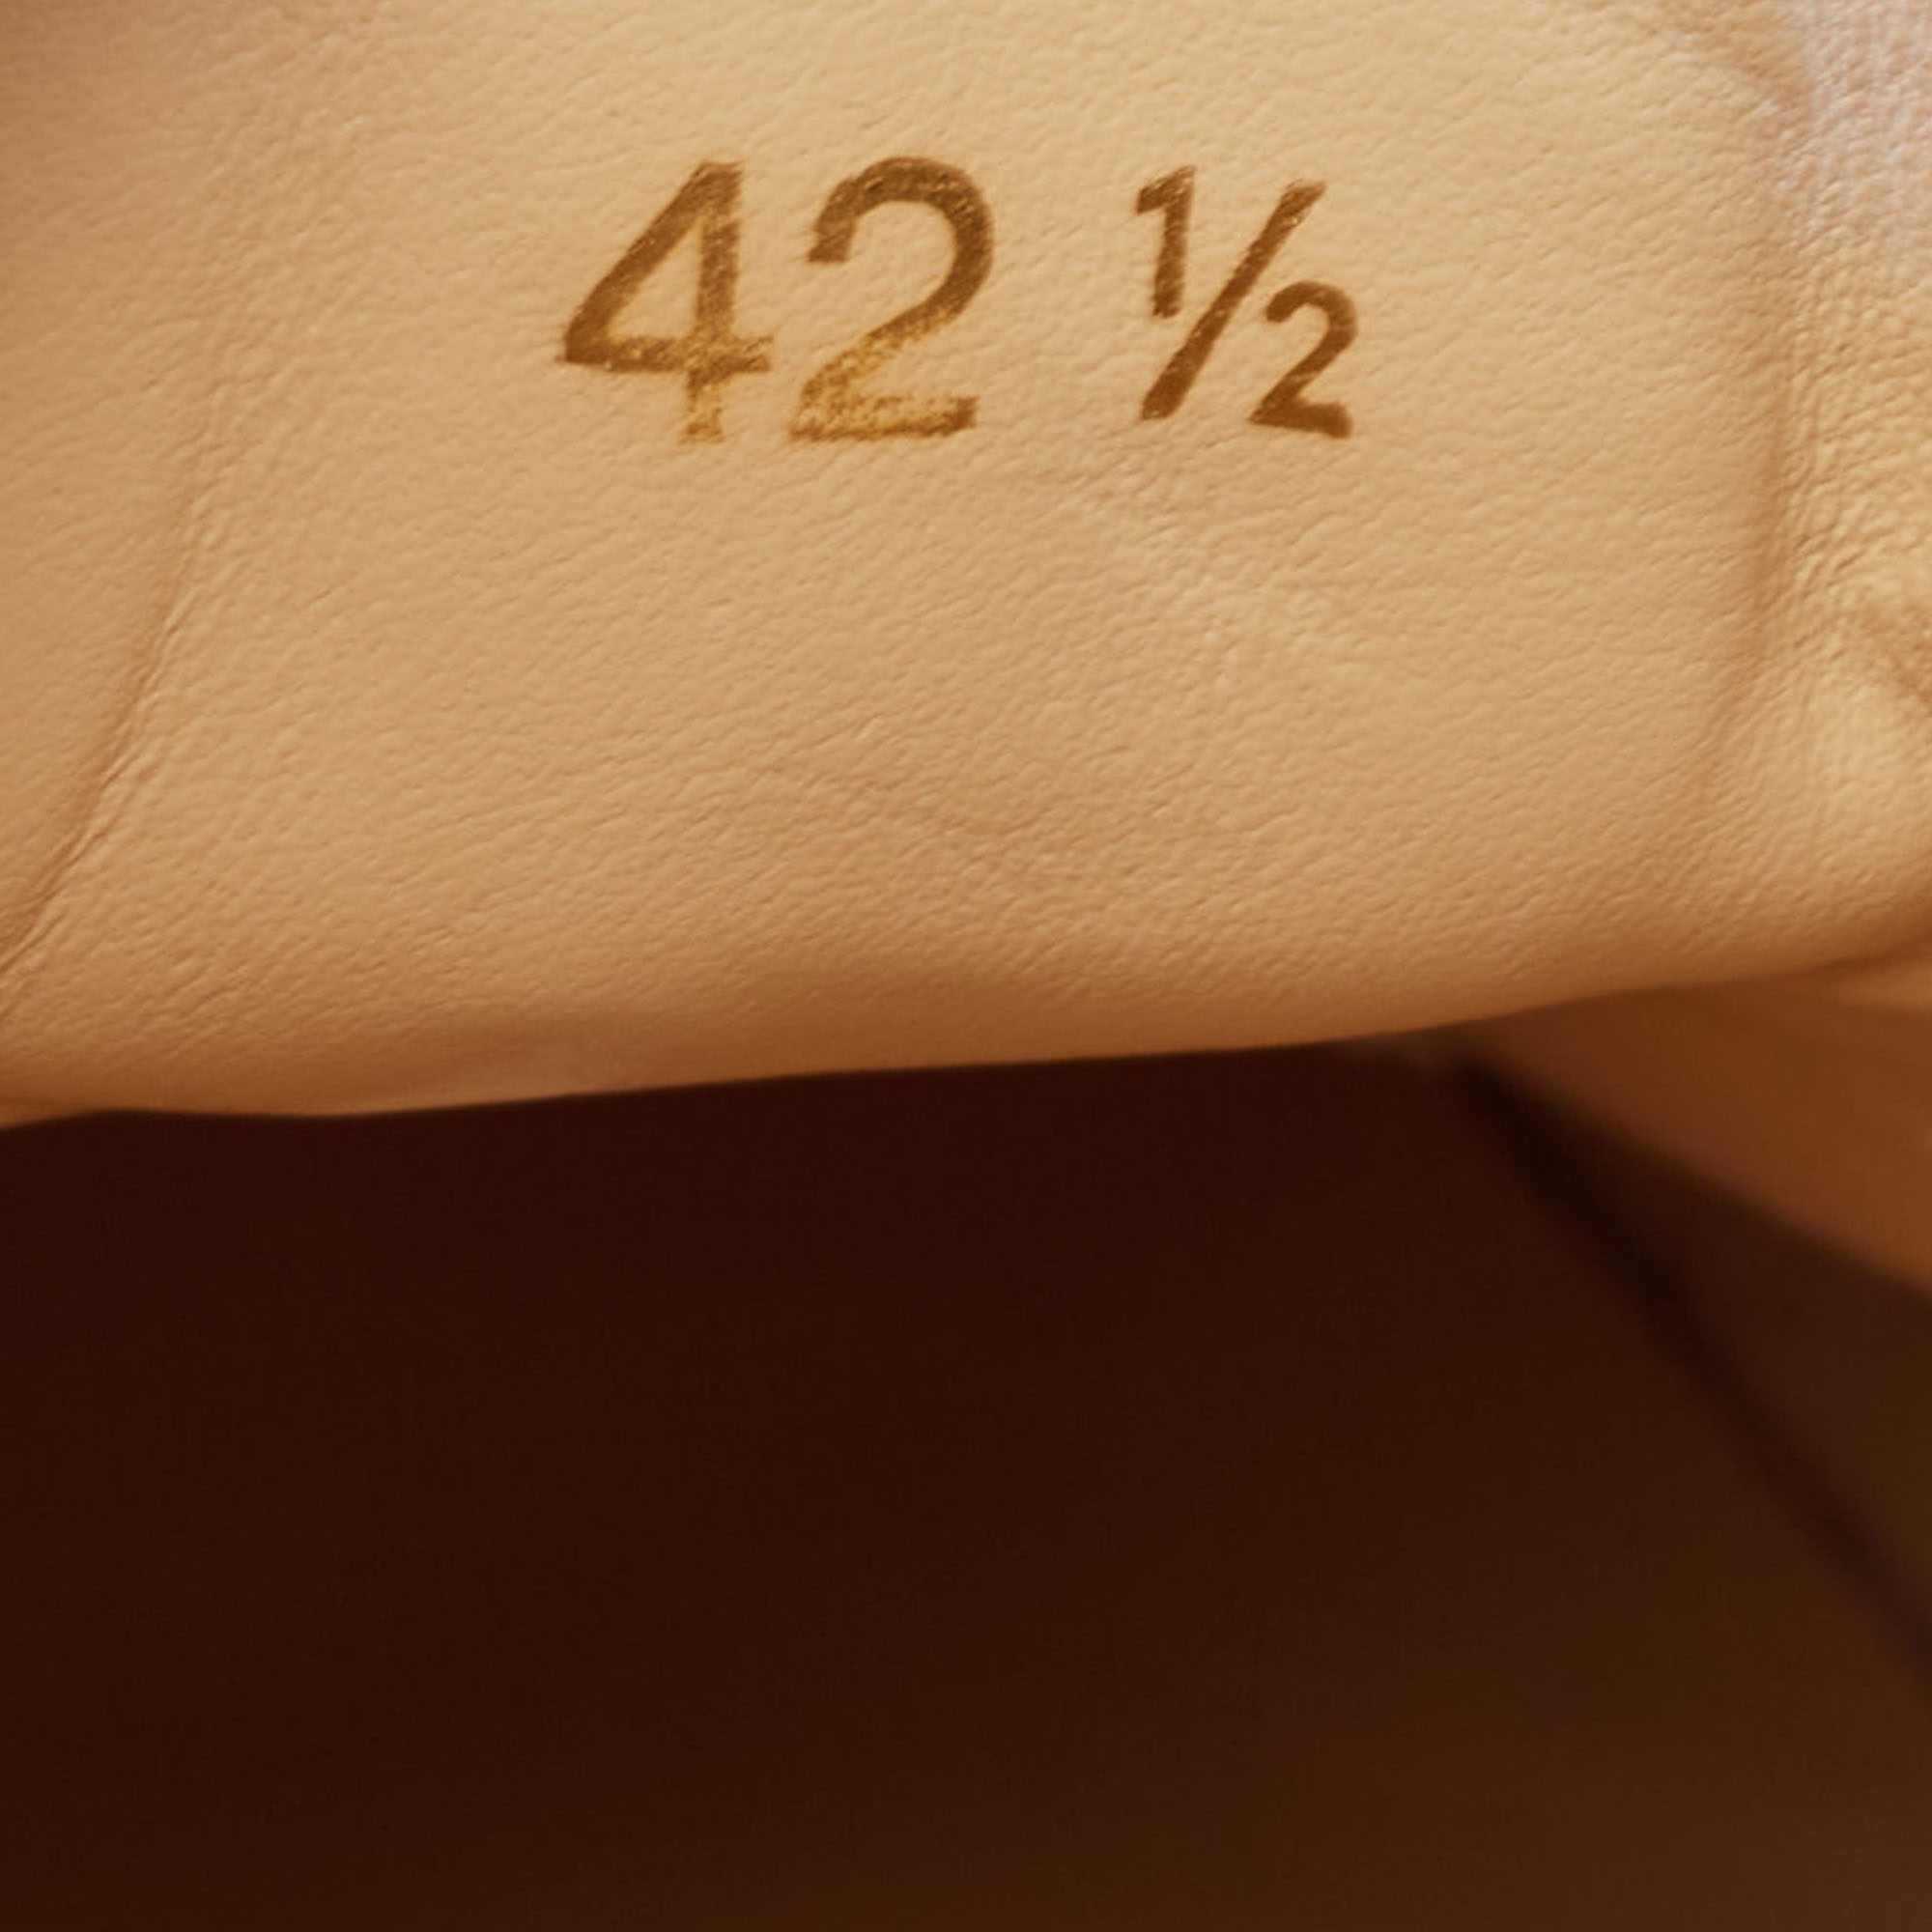 Christian Louboutin White/Orange Leather Vida Viva Sneakers Size 42.5